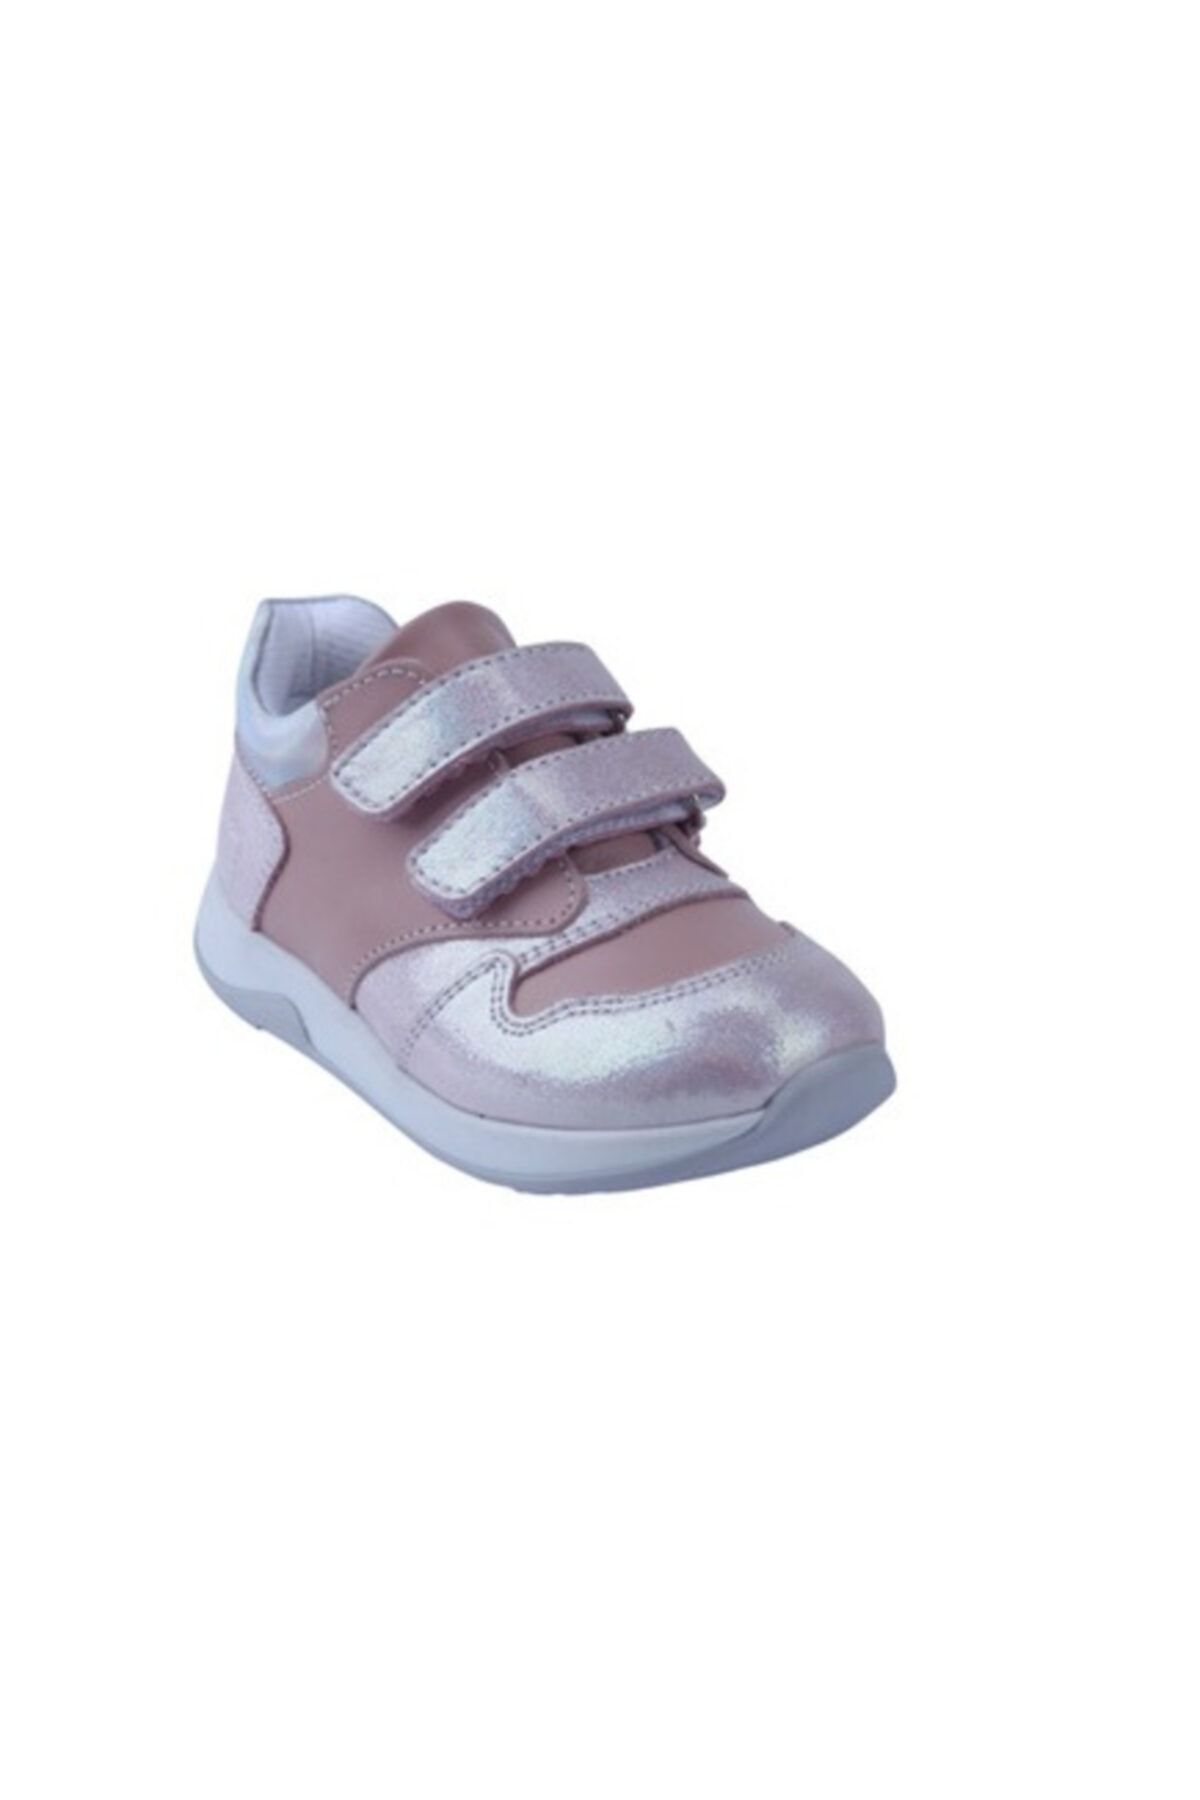 Toddler 01205 Deri Ortopedik Destekli Bebek Ayakkabısı 22-25